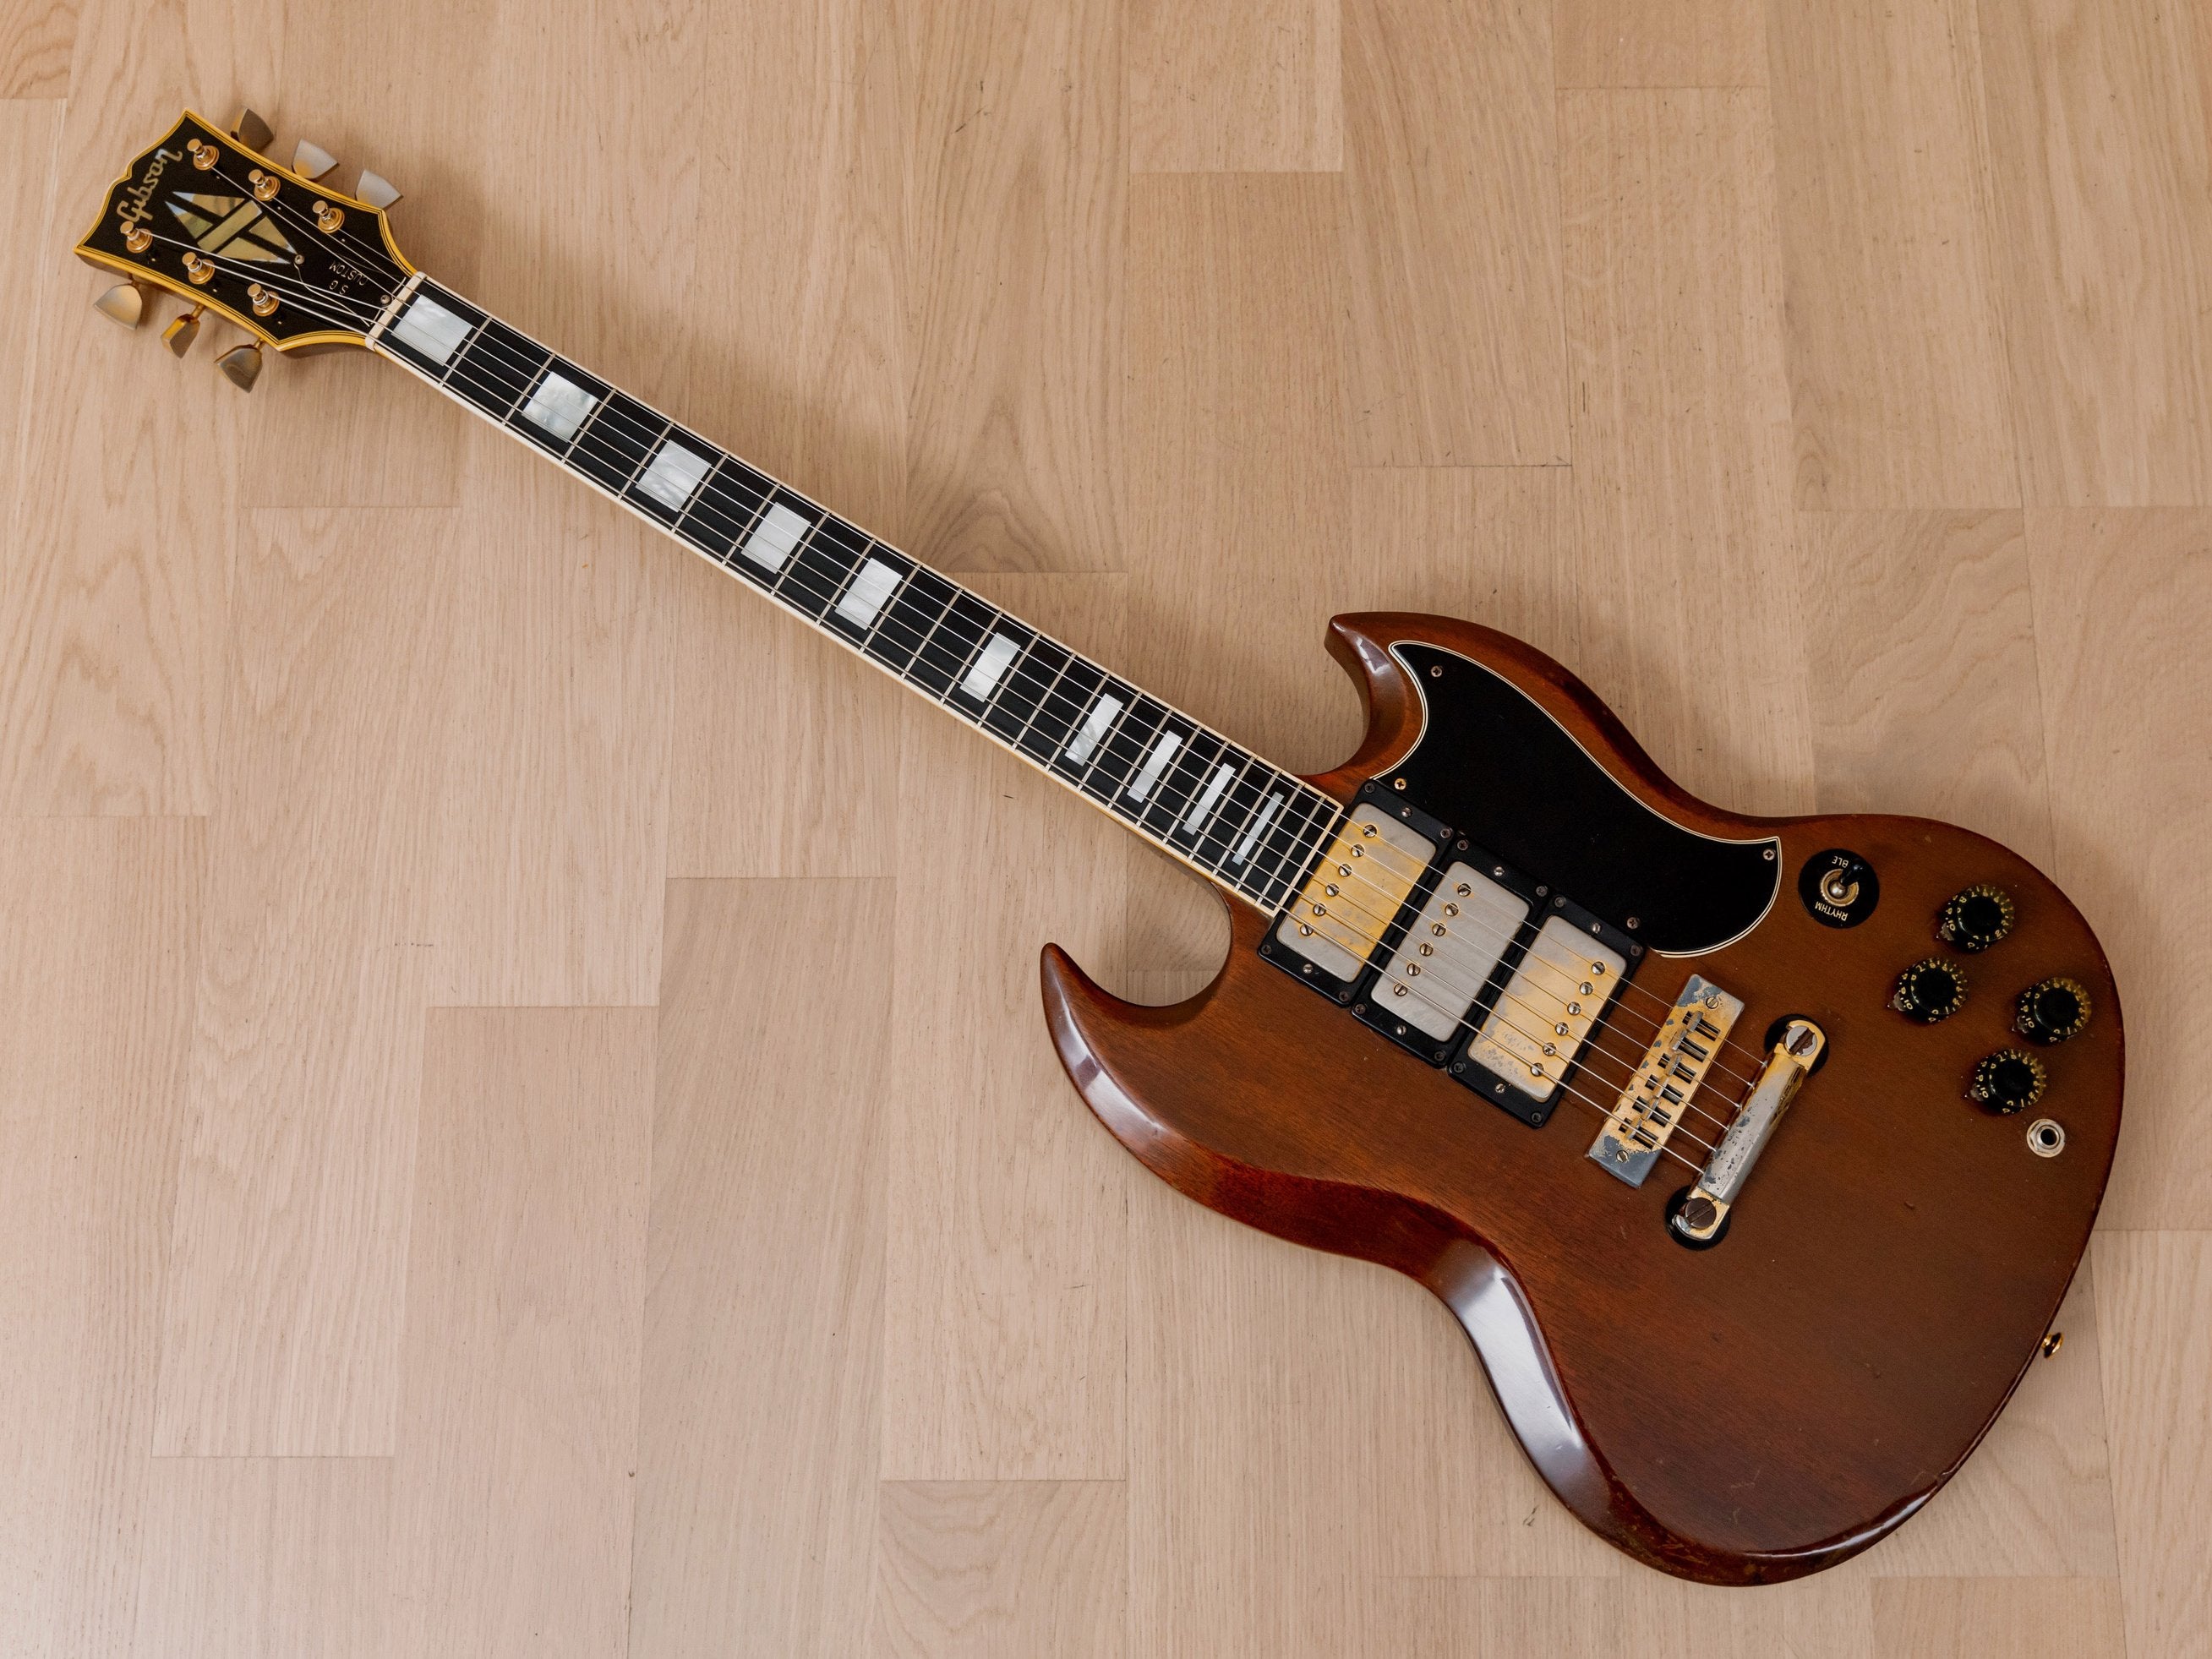 1973 Gibson SG Custom Vintage Electric Guitar Walnut 100% Original w/ Case